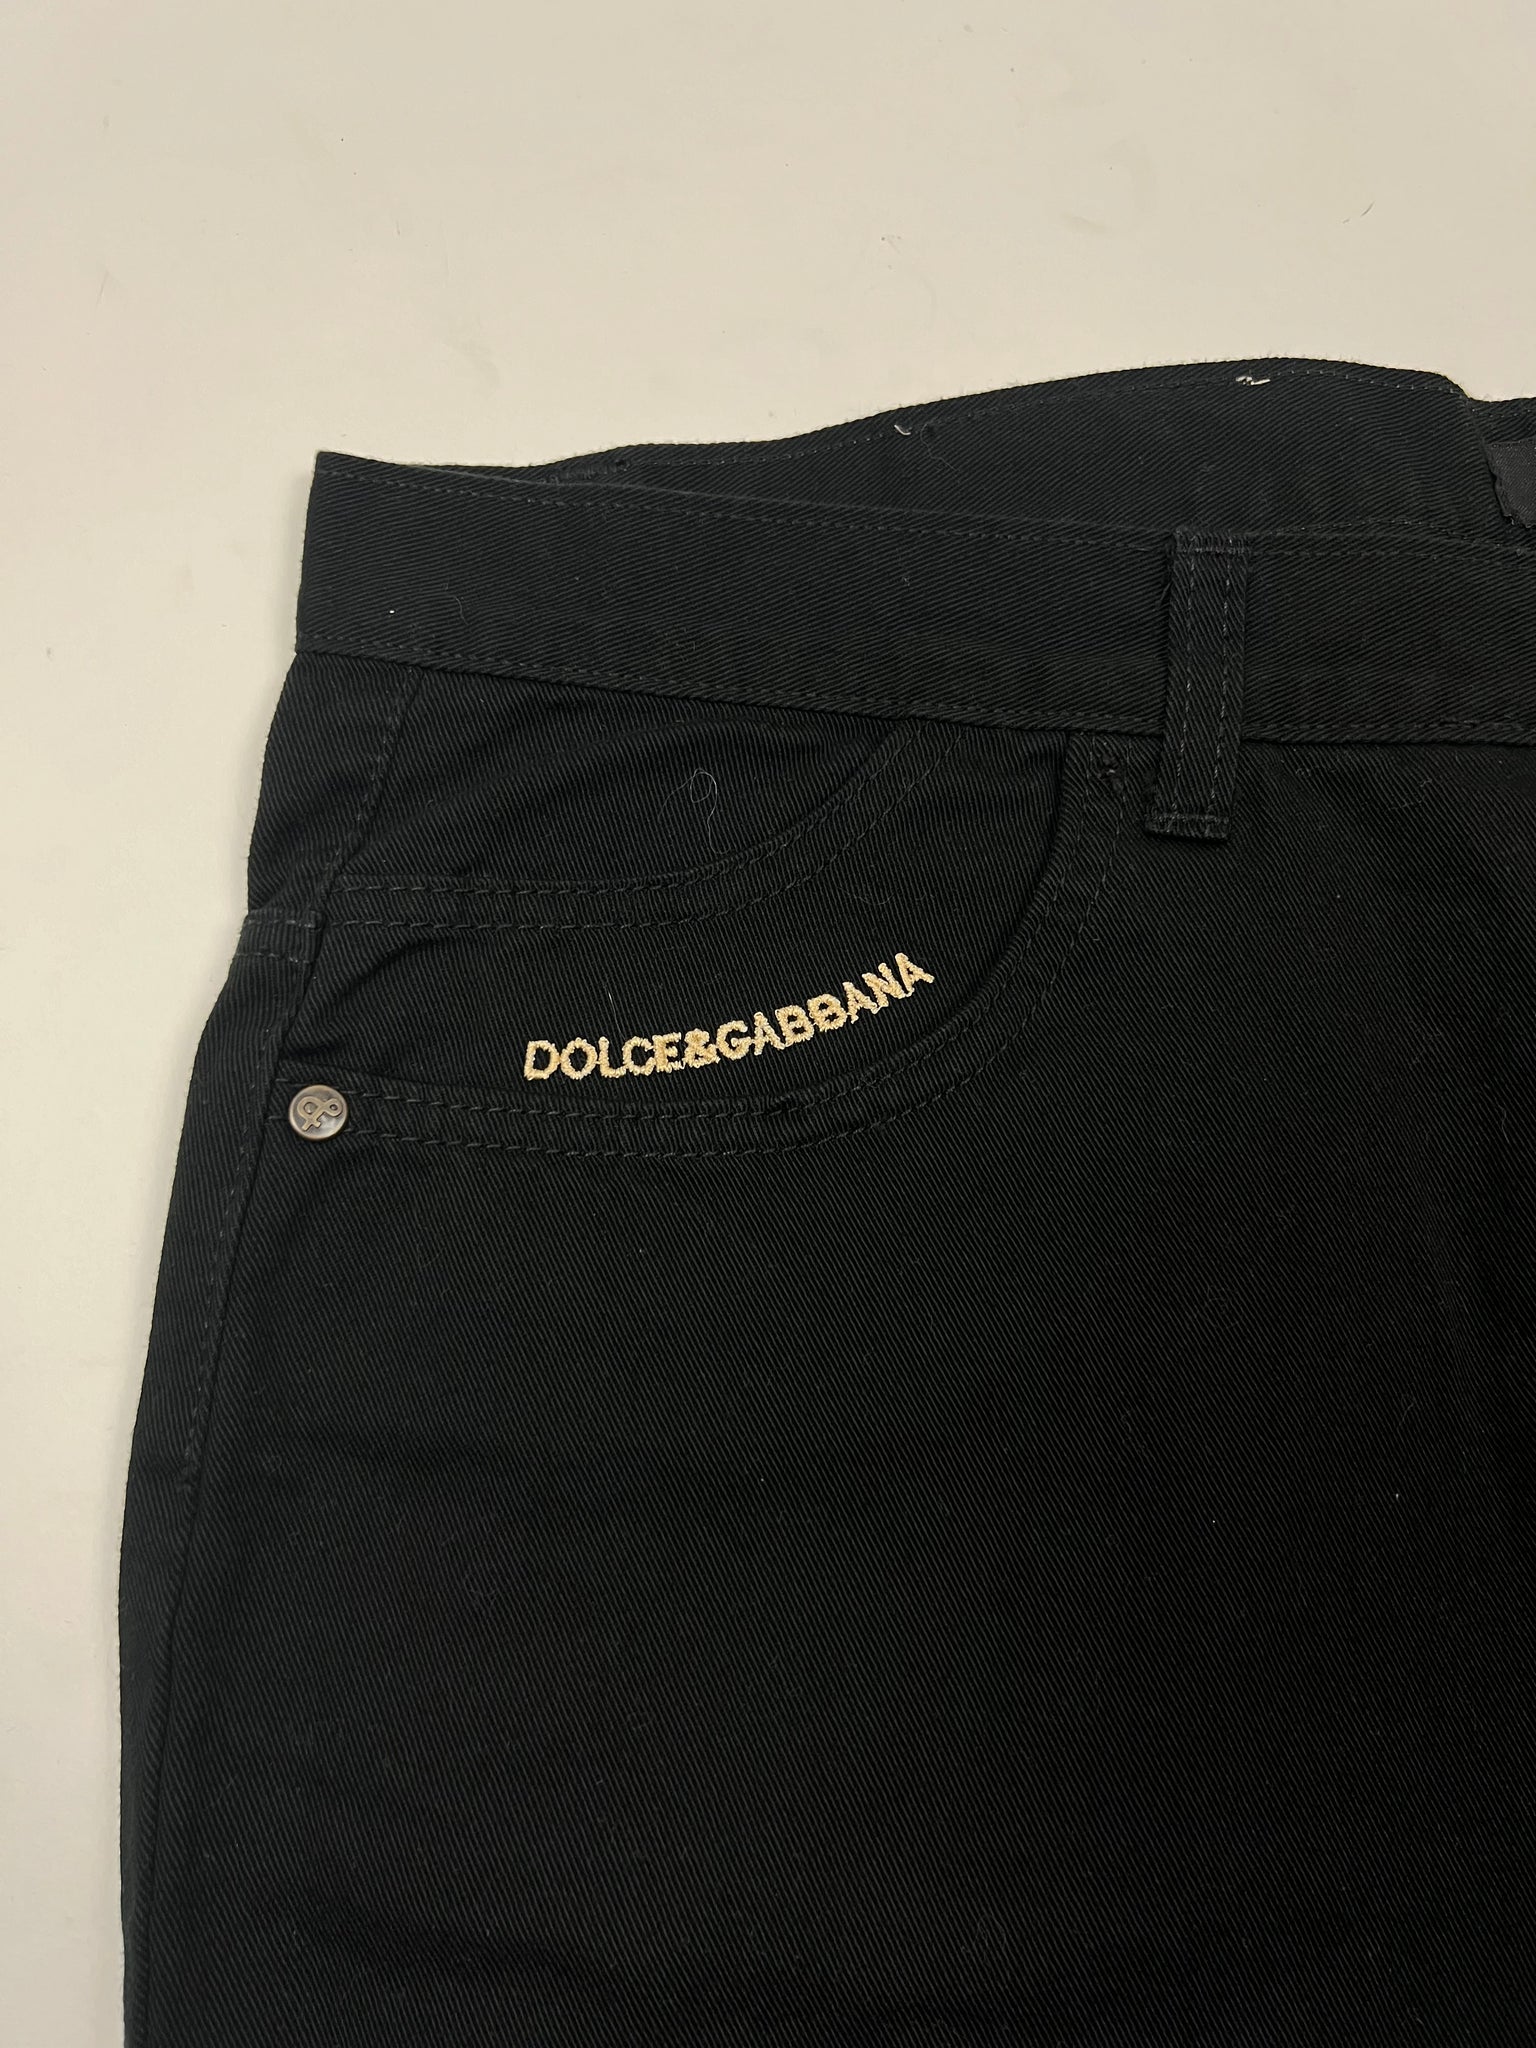 Dolce & Gabbana Jeans (38)